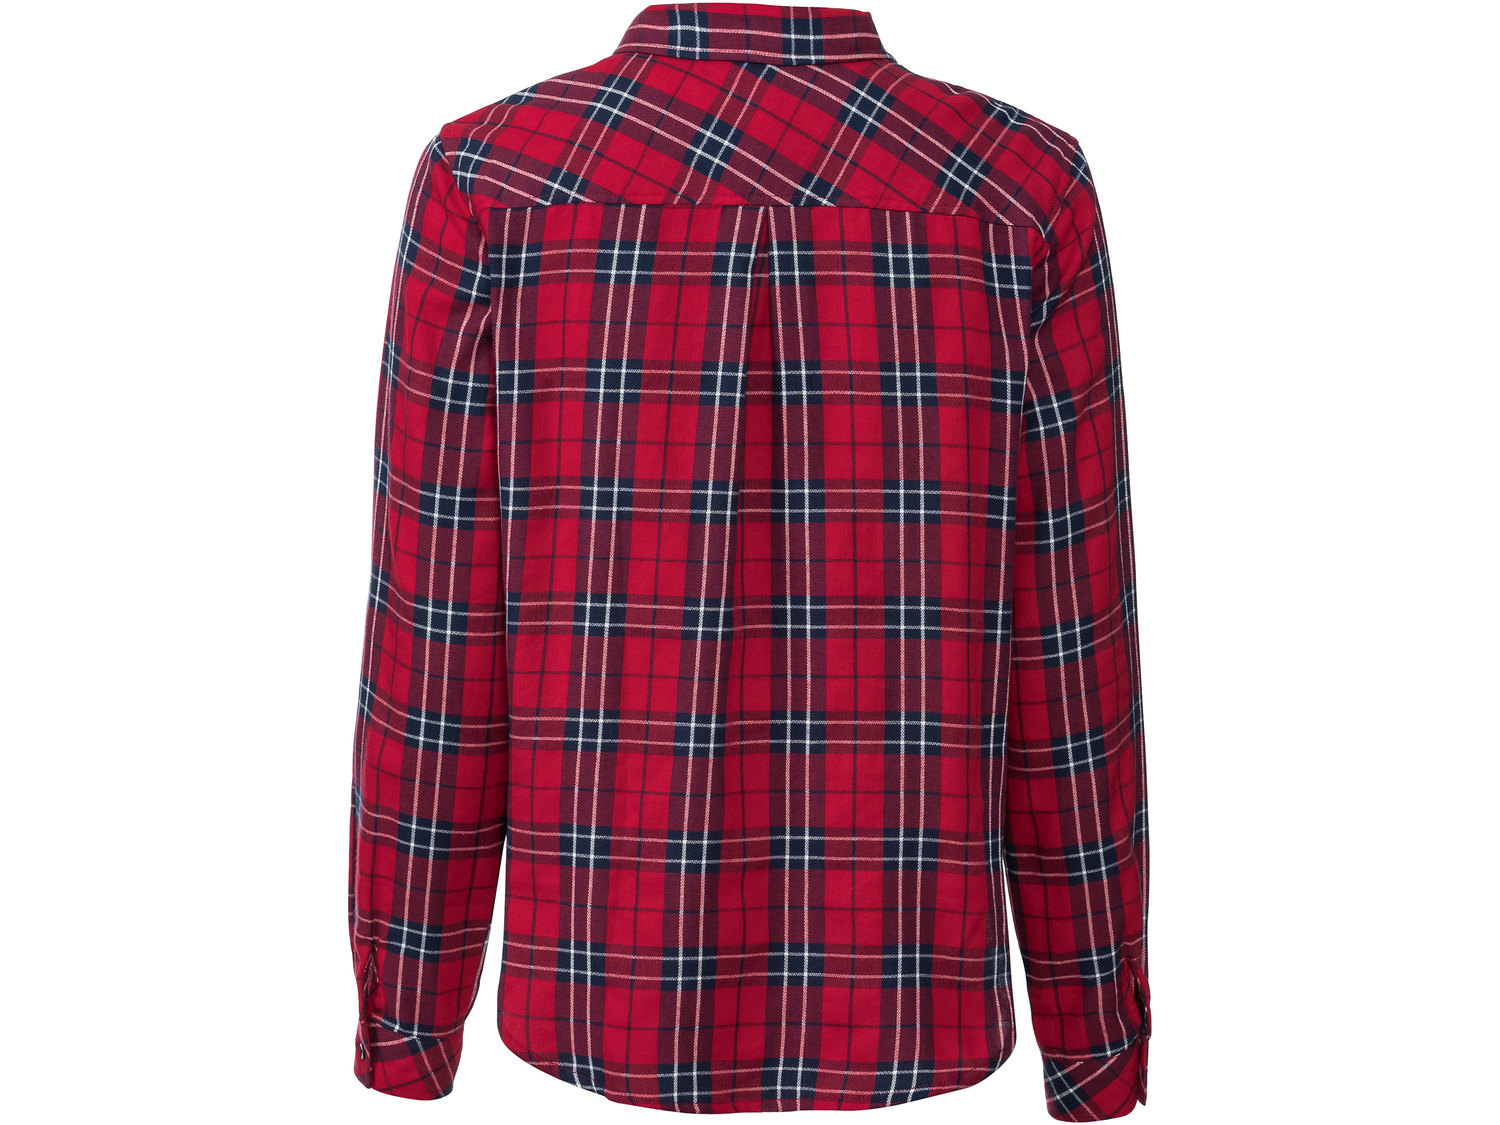 Koszula flanelowa Esmara, cena 29,99 PLN 
- koszula flanelowa w kratkę to klasyczny ...